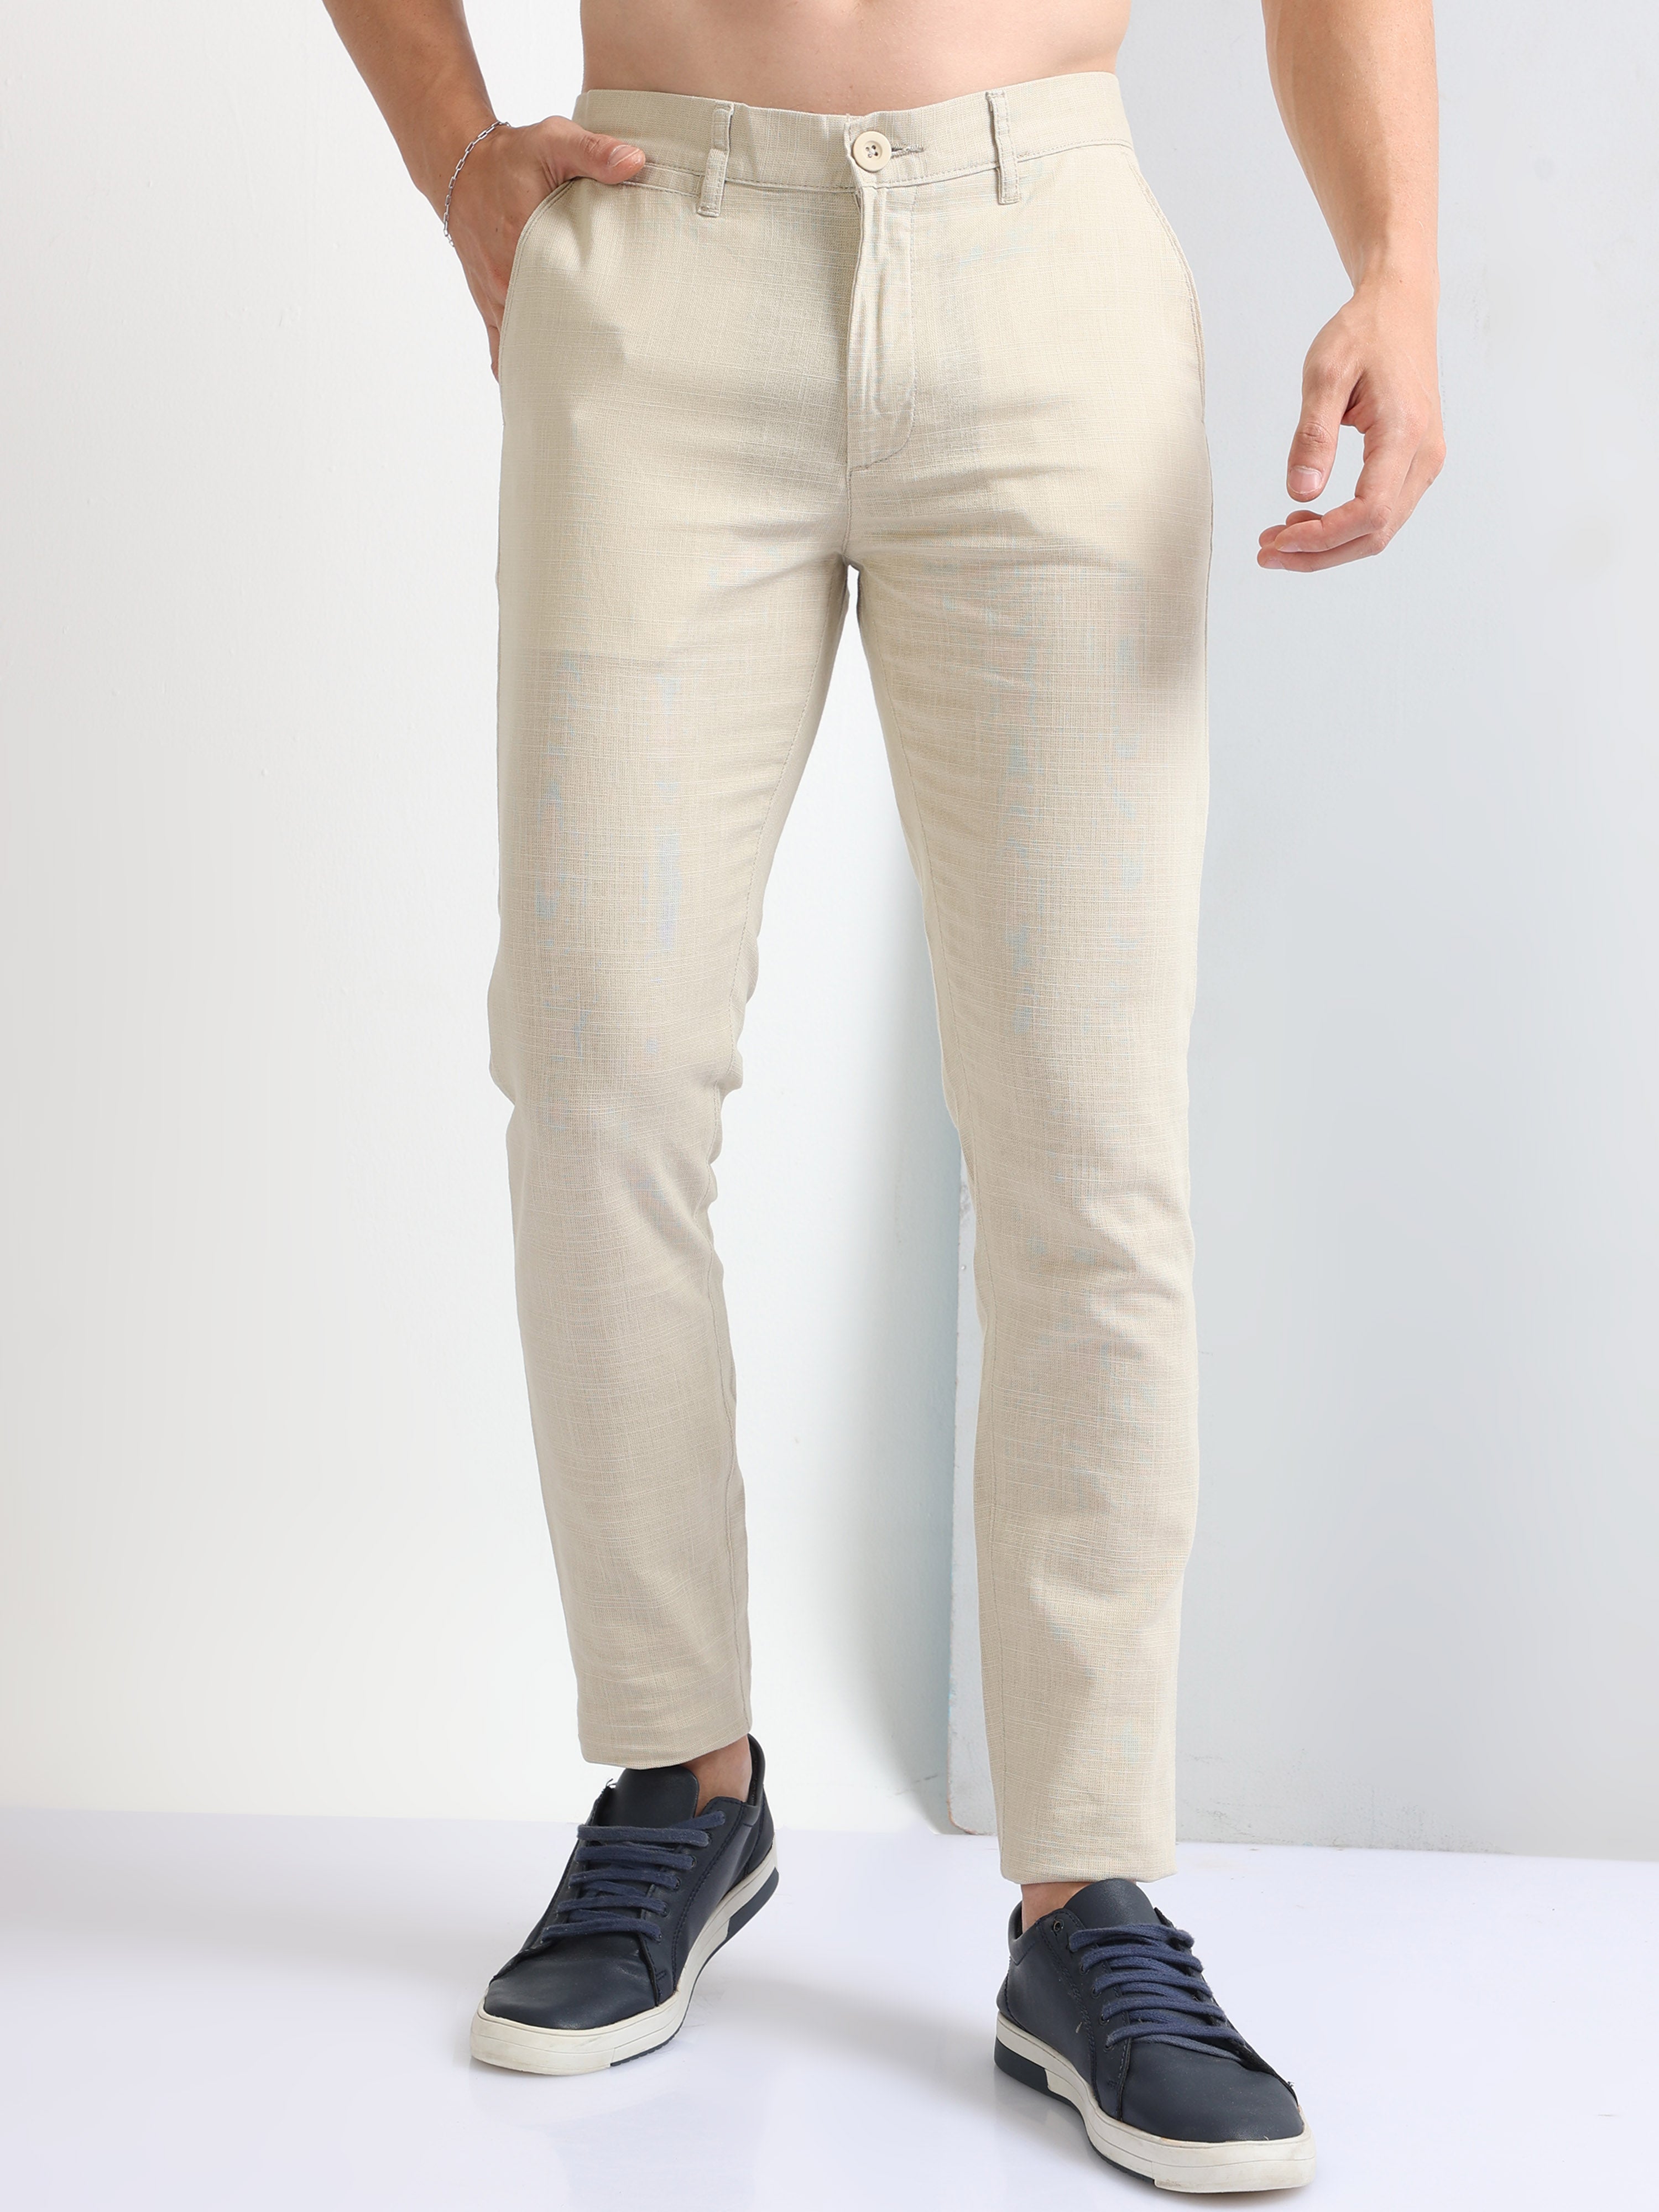 Zara Man Skinny Stretch Fit Chinos Pants Trousers US 29 Beige/Khaki | eBay